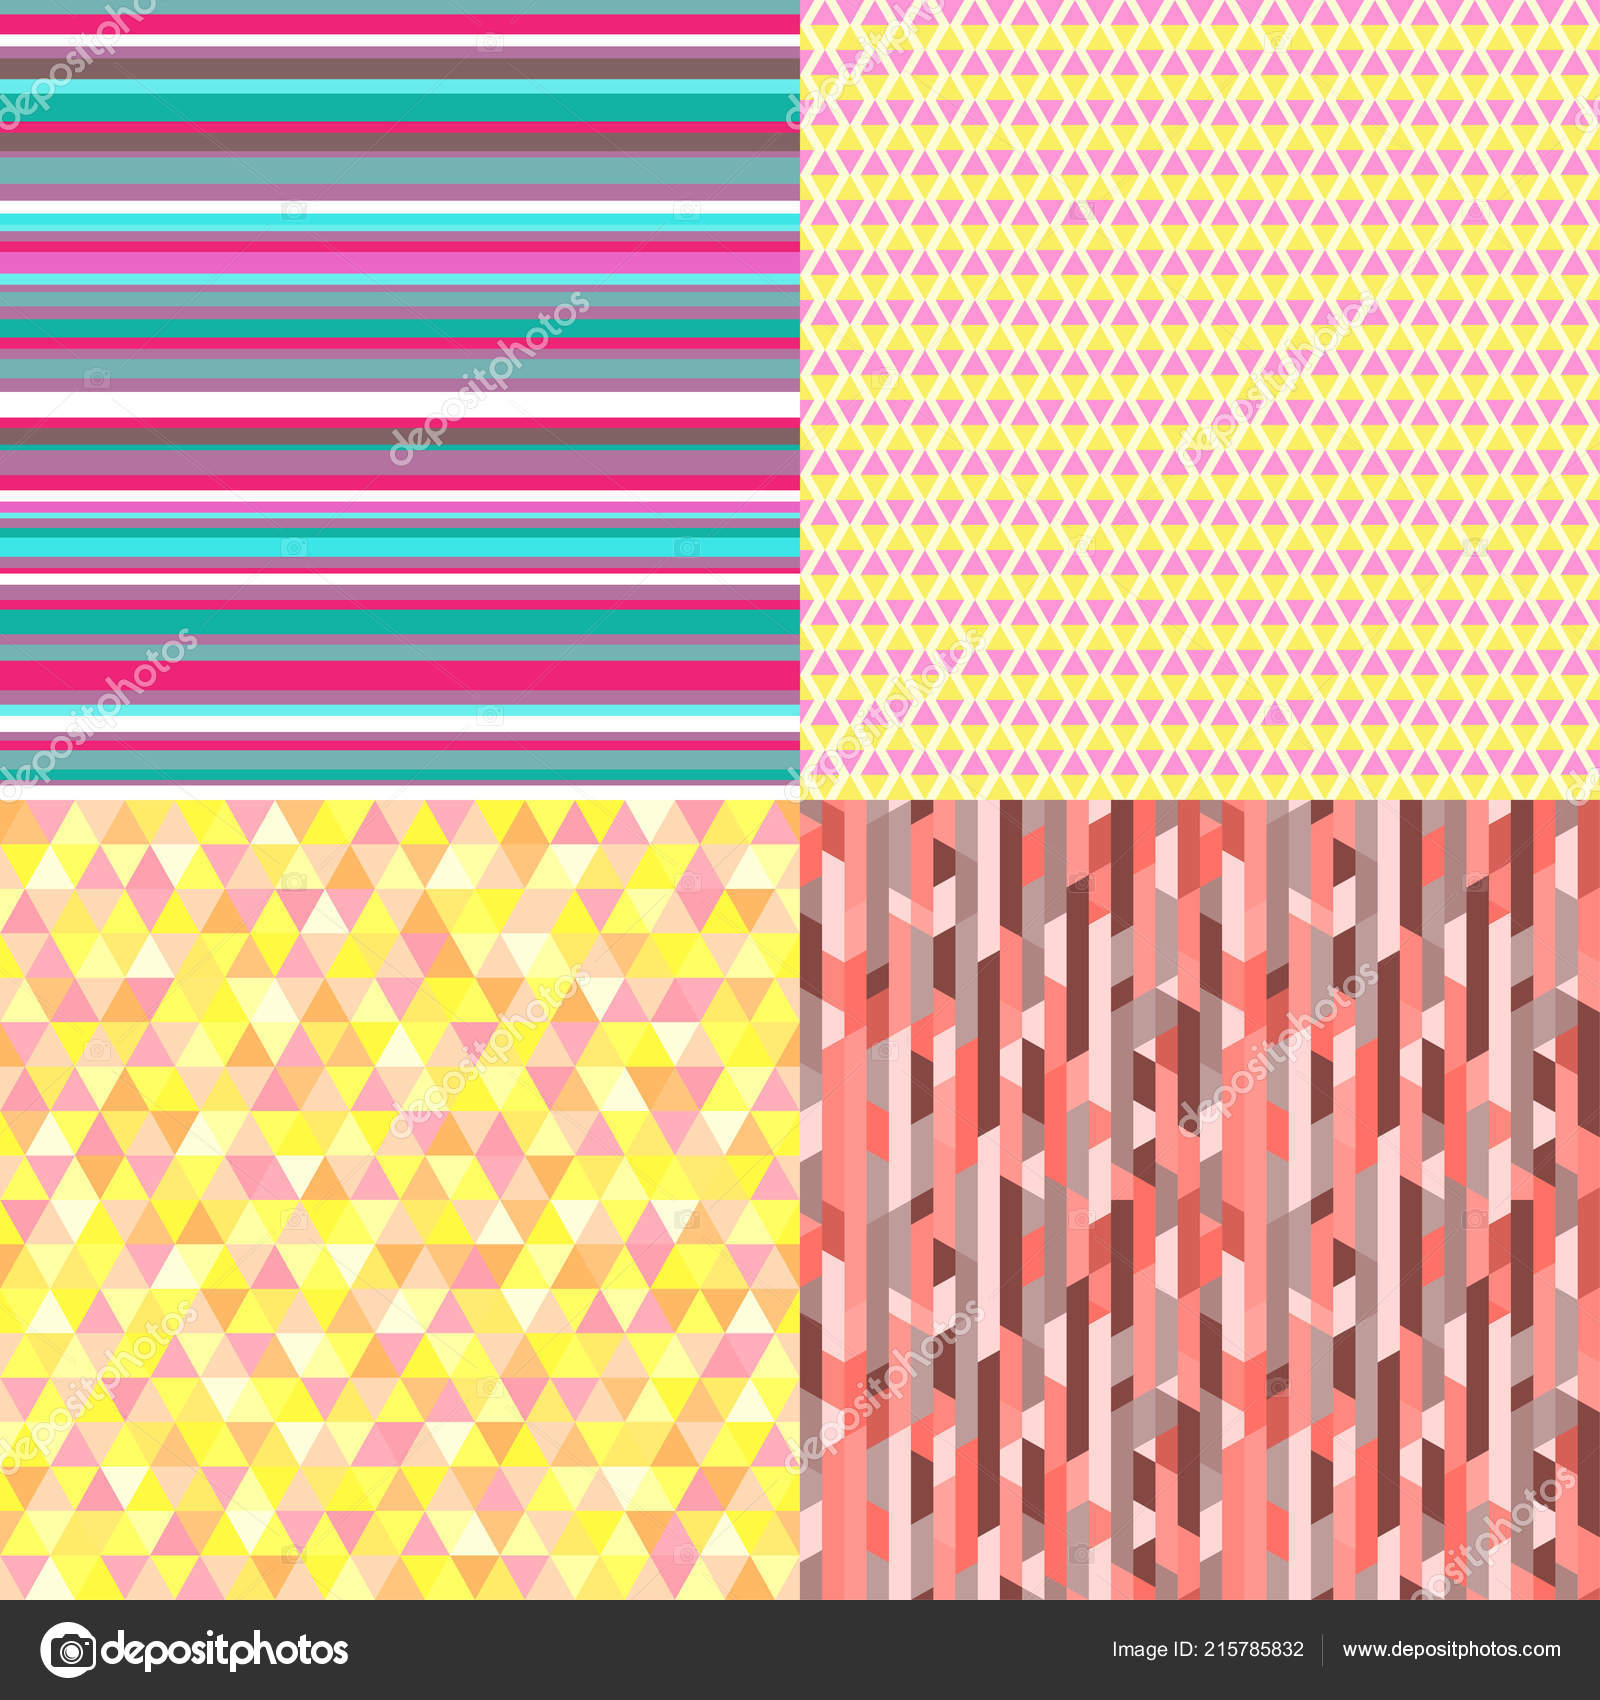 Pretty Bright Patterns - HD Wallpaper 